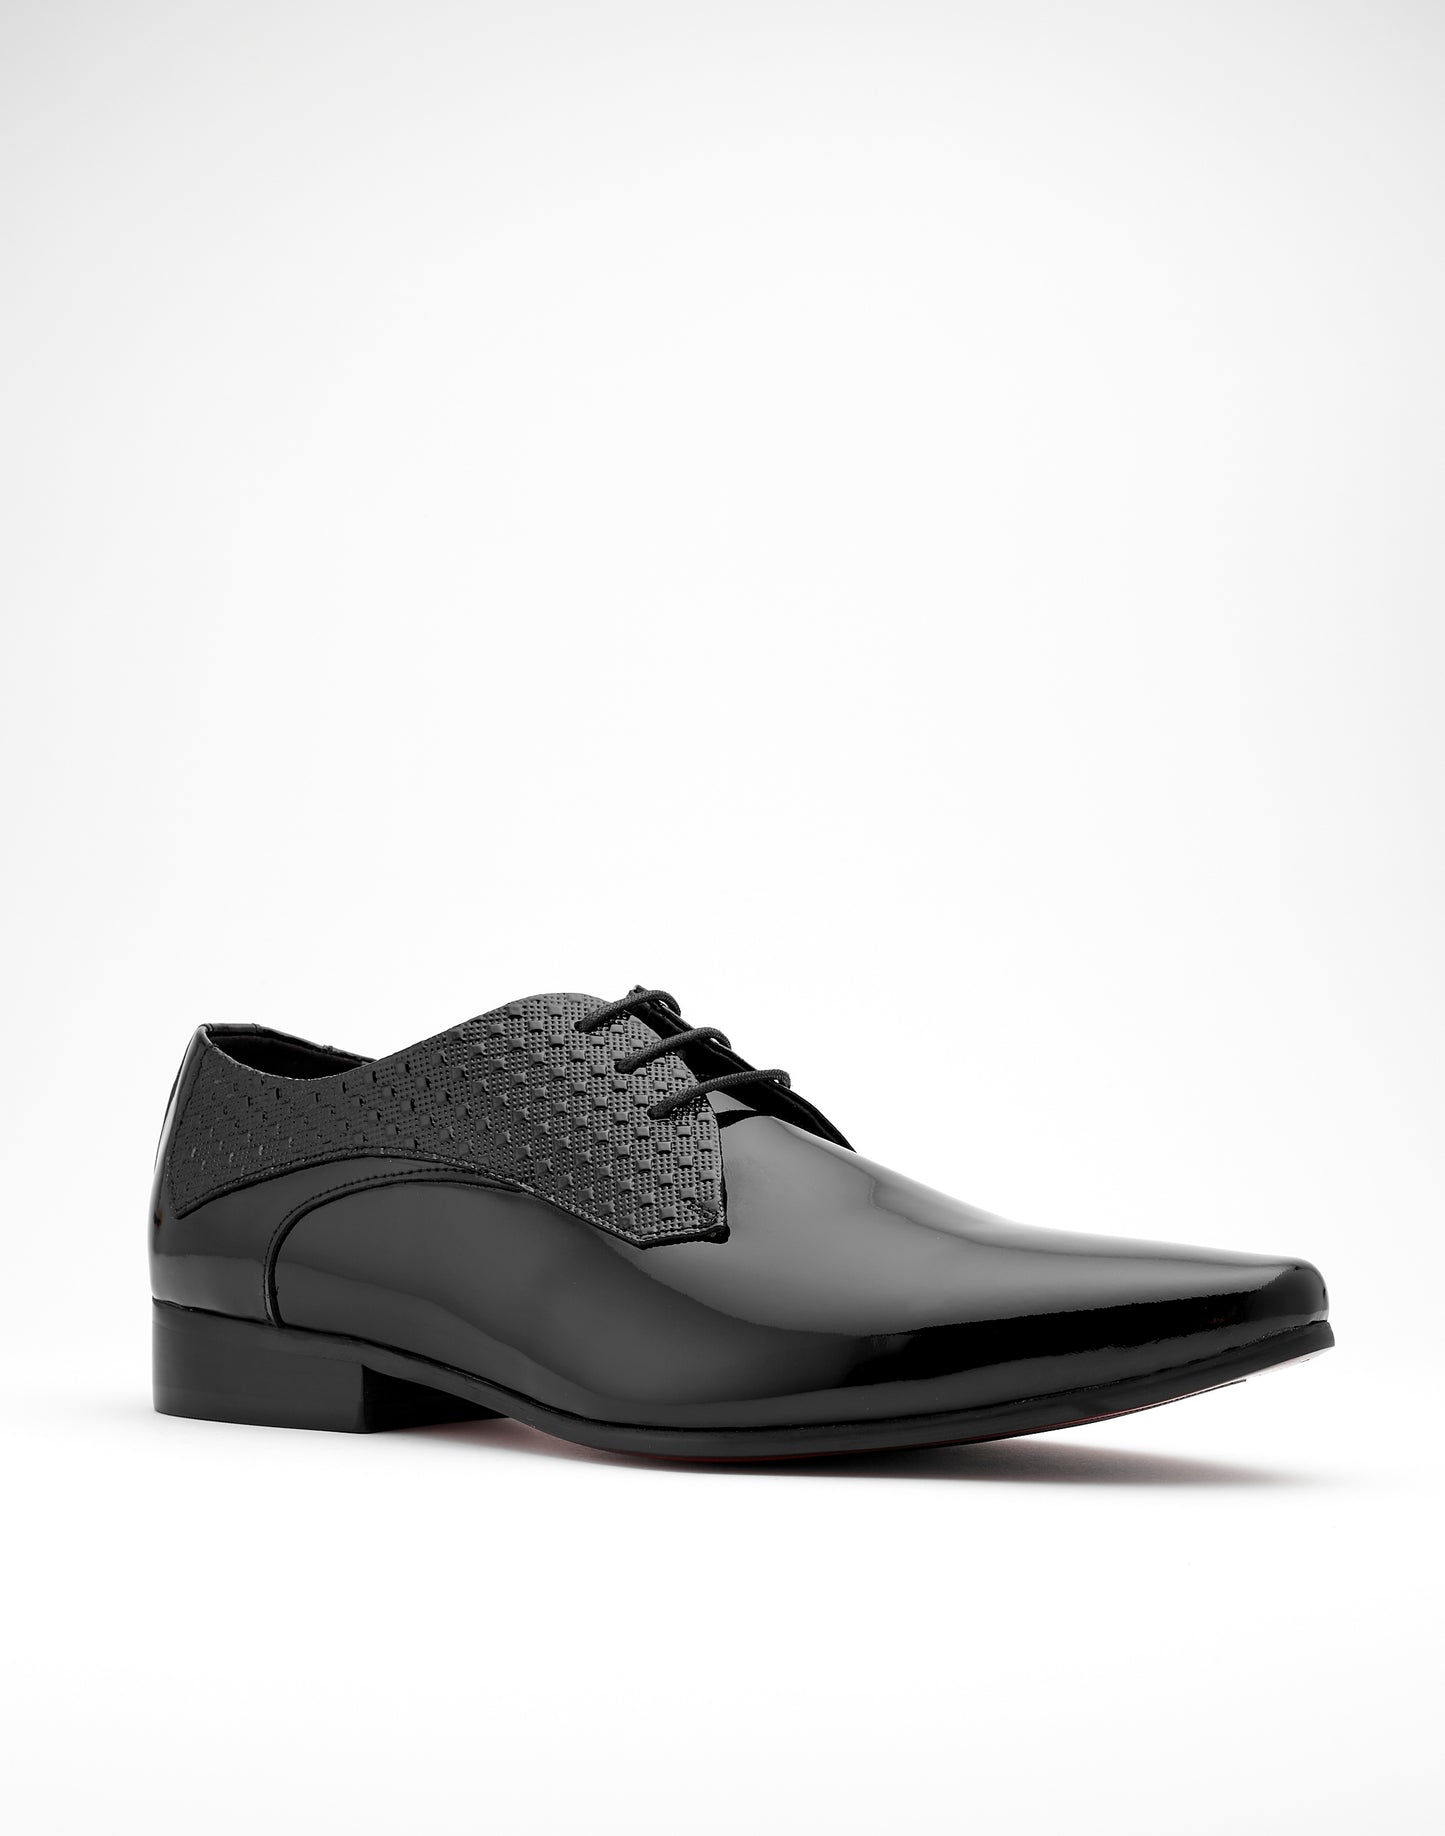 Marcello Shoe Patent Black